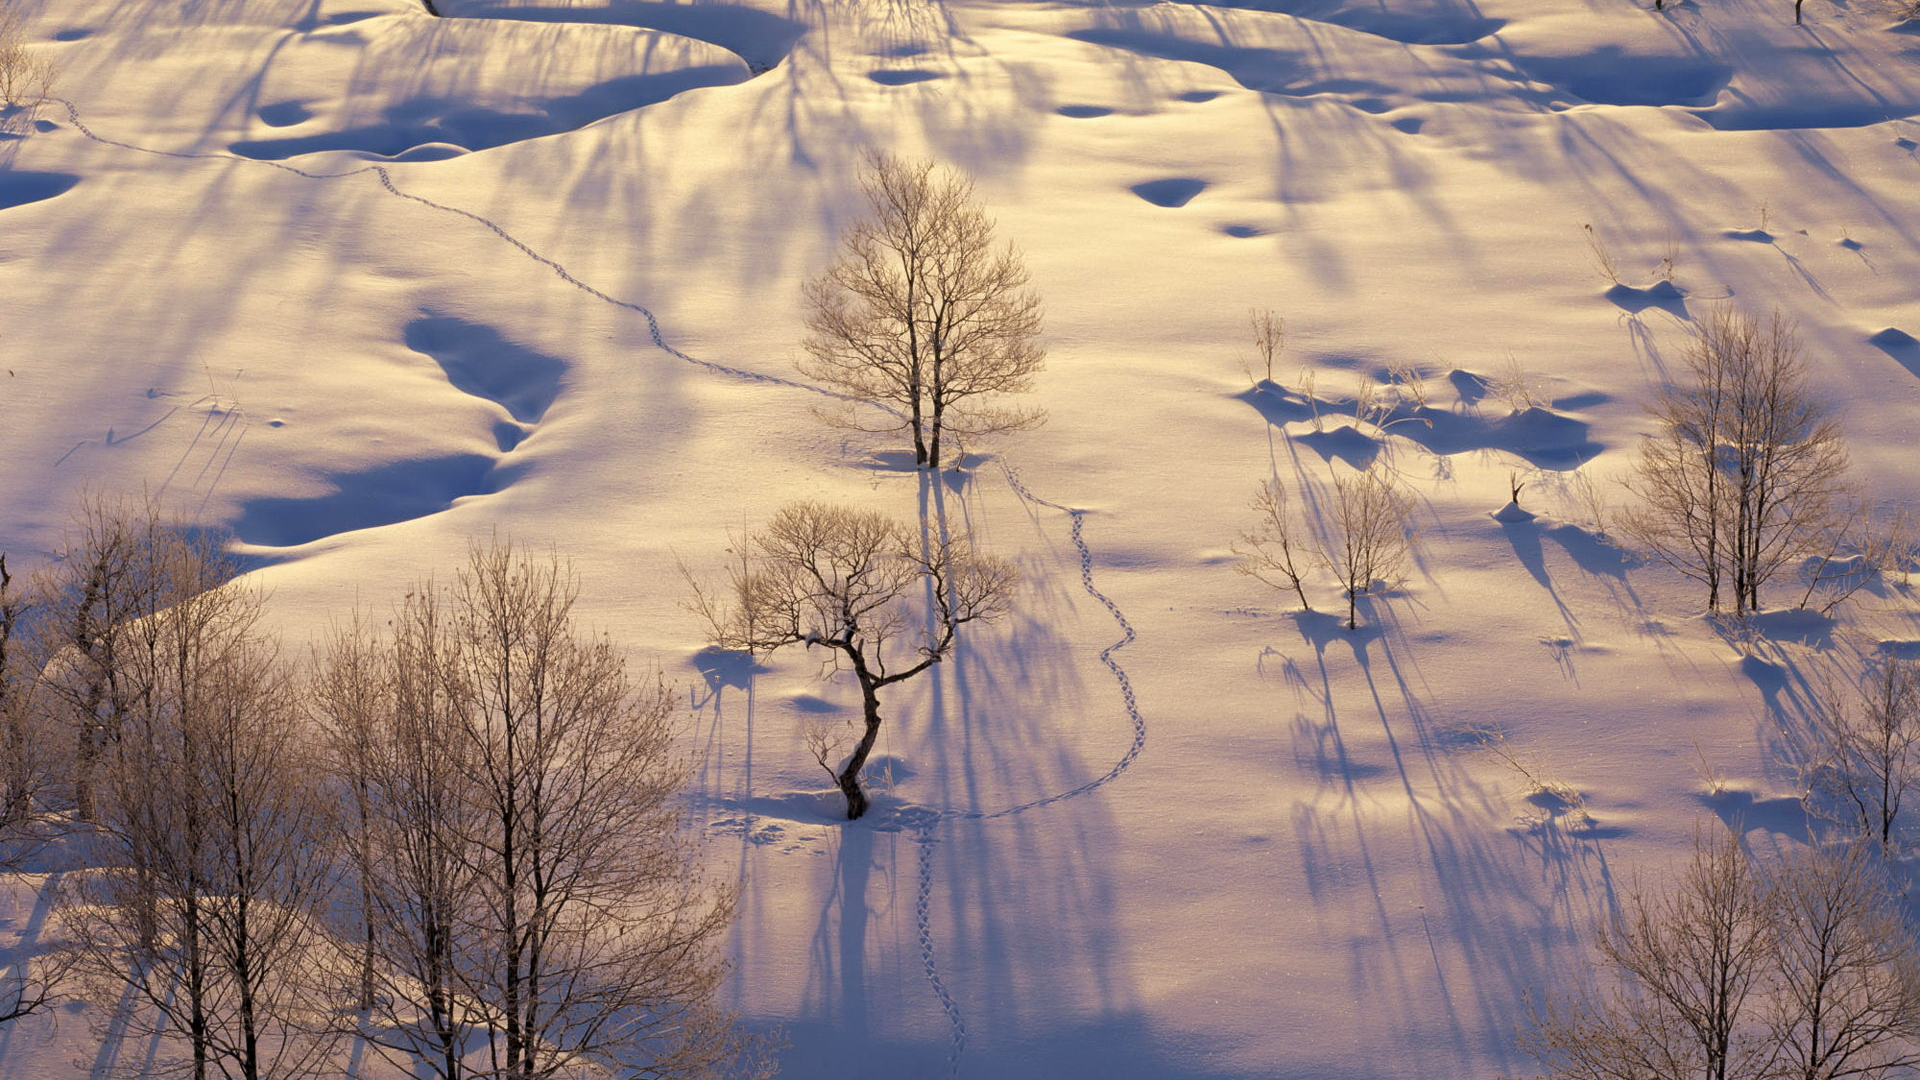 تصویر زمستانی از زمین پوشیده از برف در آفتاب برای وضعیت واتساپ